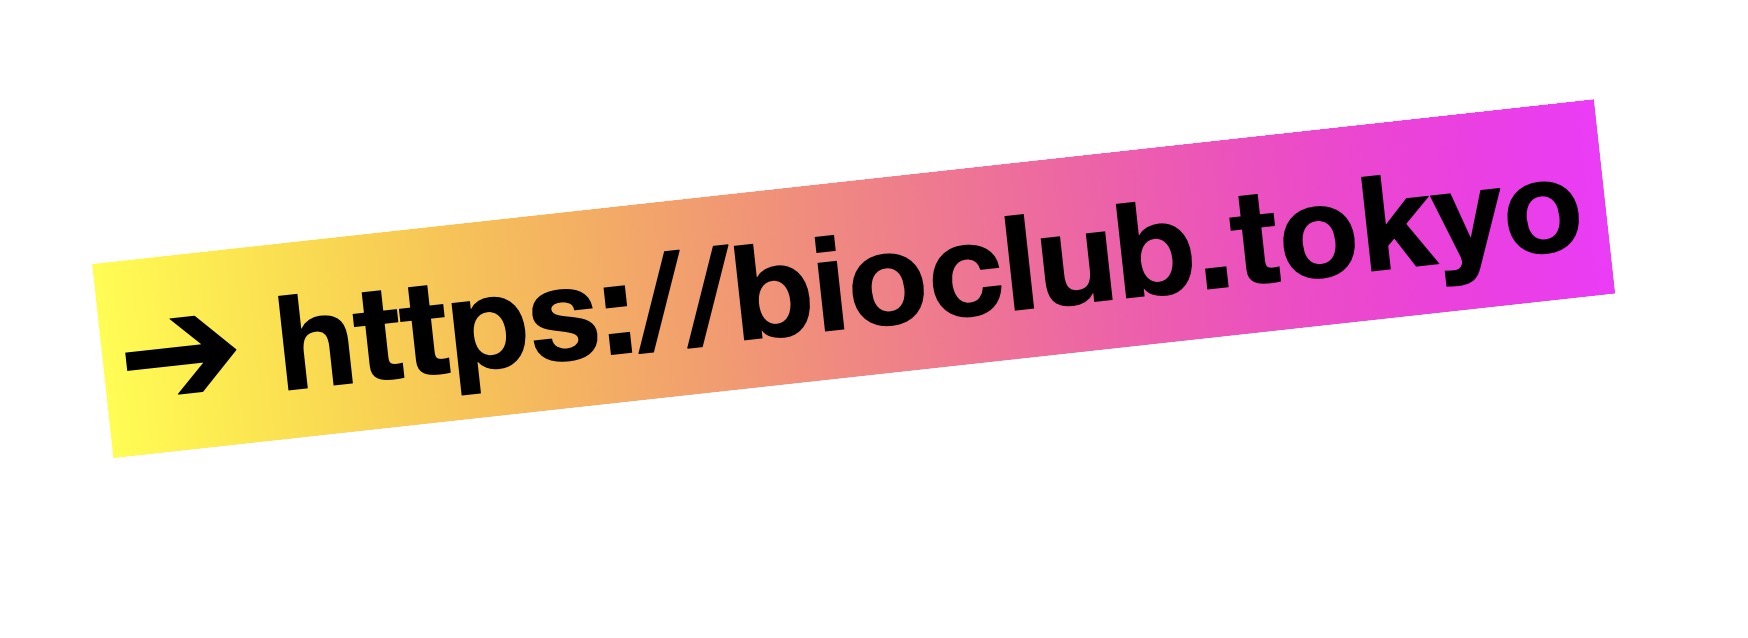 新サーバーへの移行 https://www.bioclub.tokyo